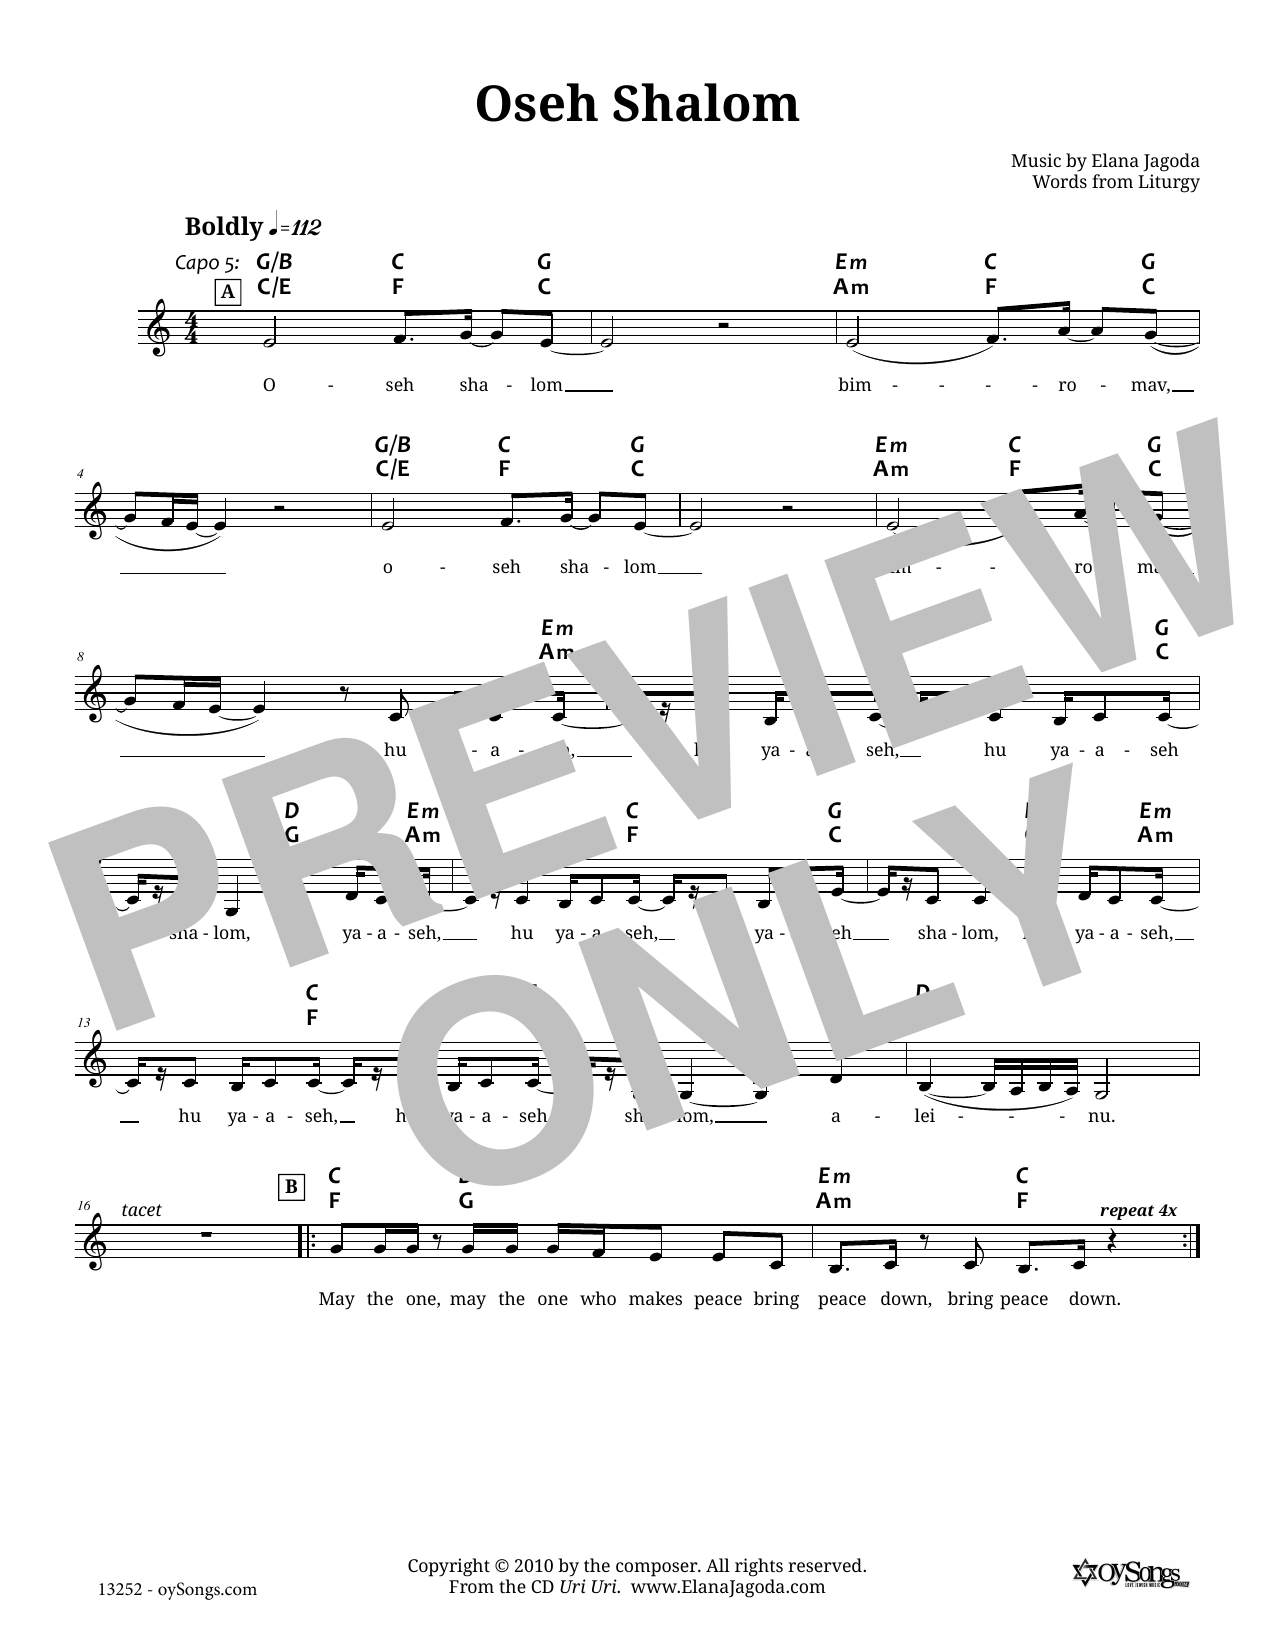 Elana Jagoda Oseh Shalom Sheet Music Notes & Chords for Melody Line, Lyrics & Chords - Download or Print PDF